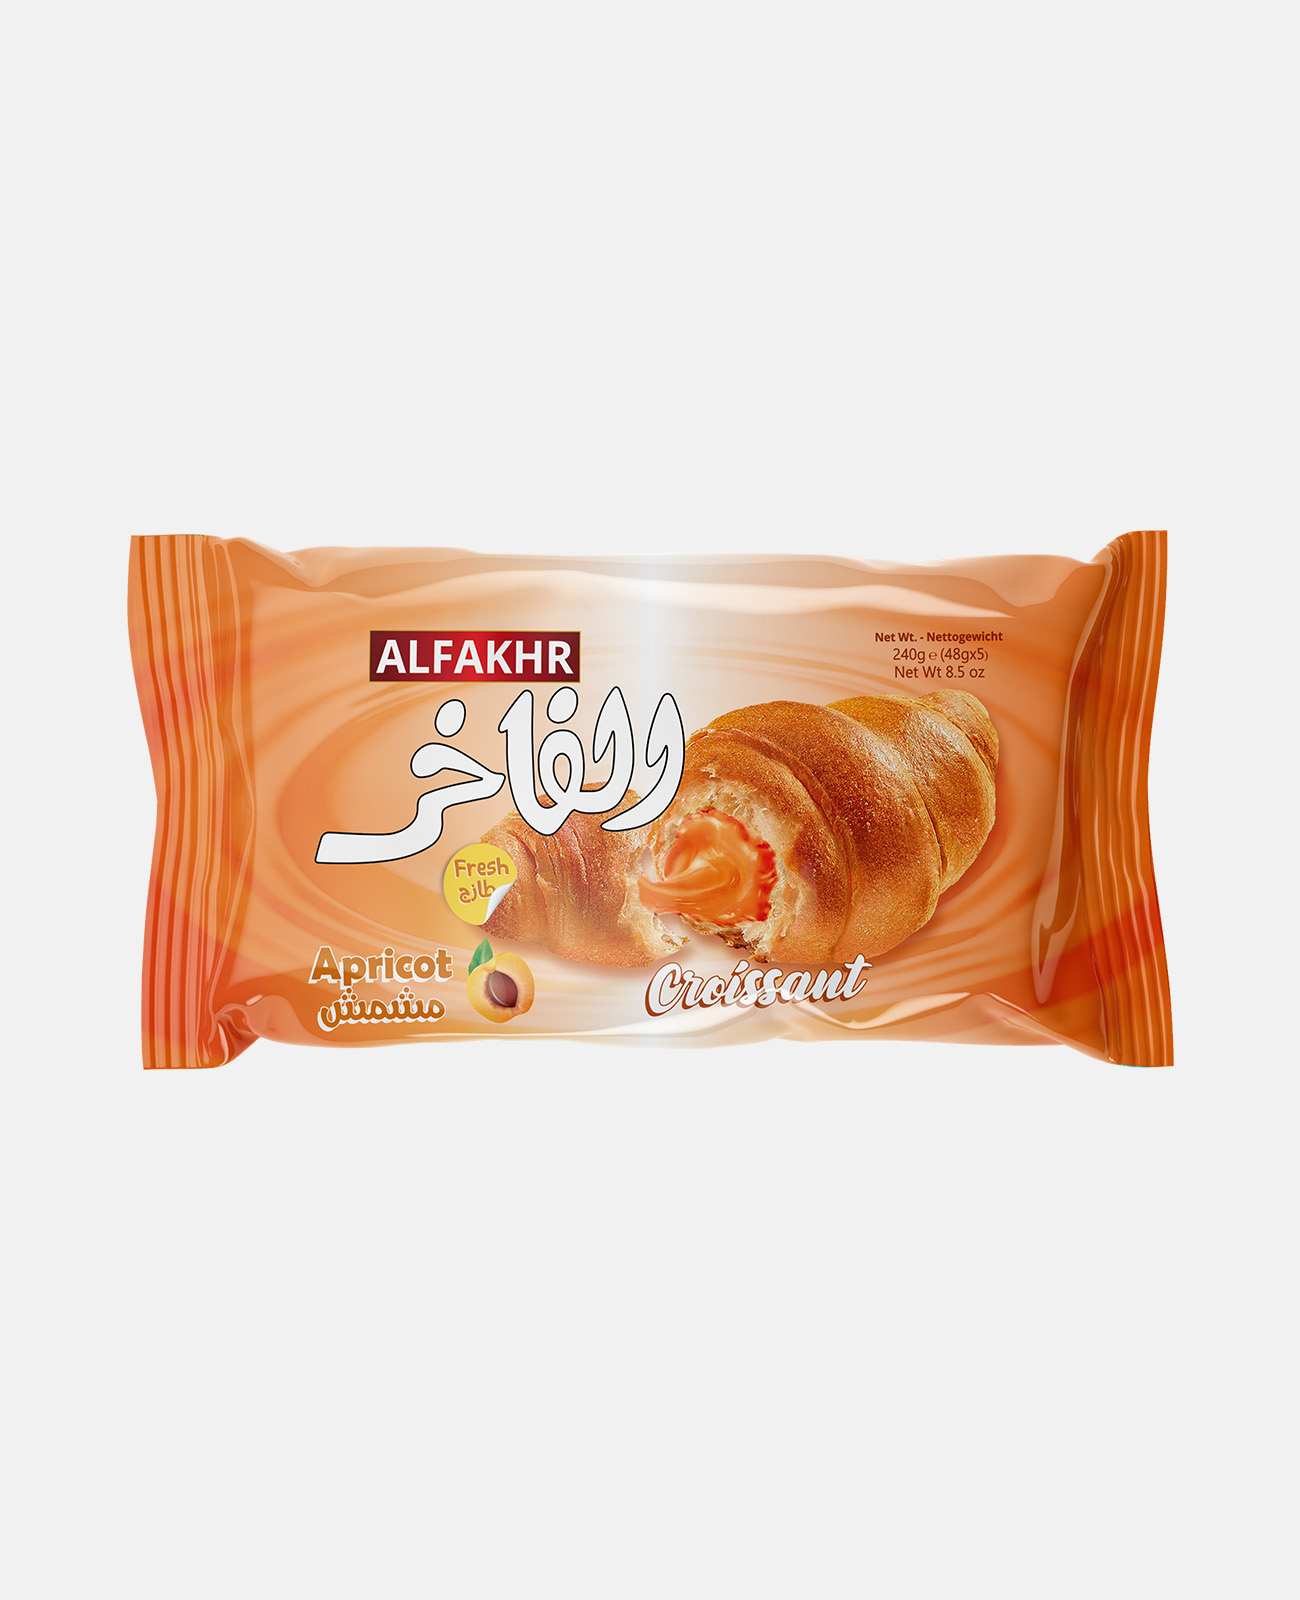 Alfakhr Croissant - Apricot Flavour